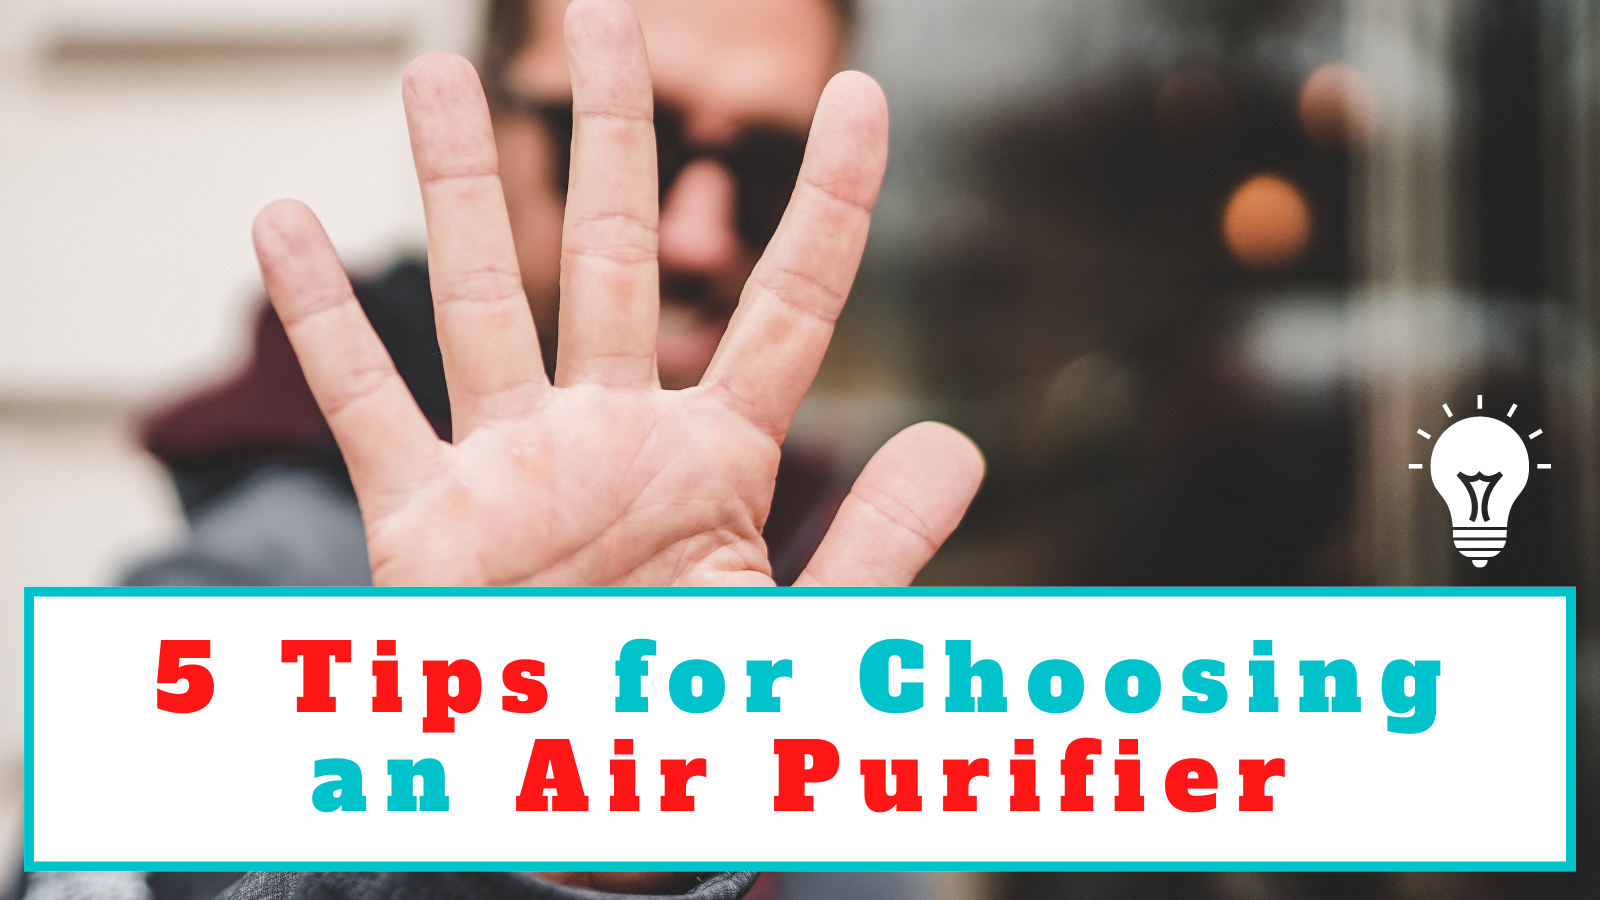 5 Tips for Choosing an Air Purifier